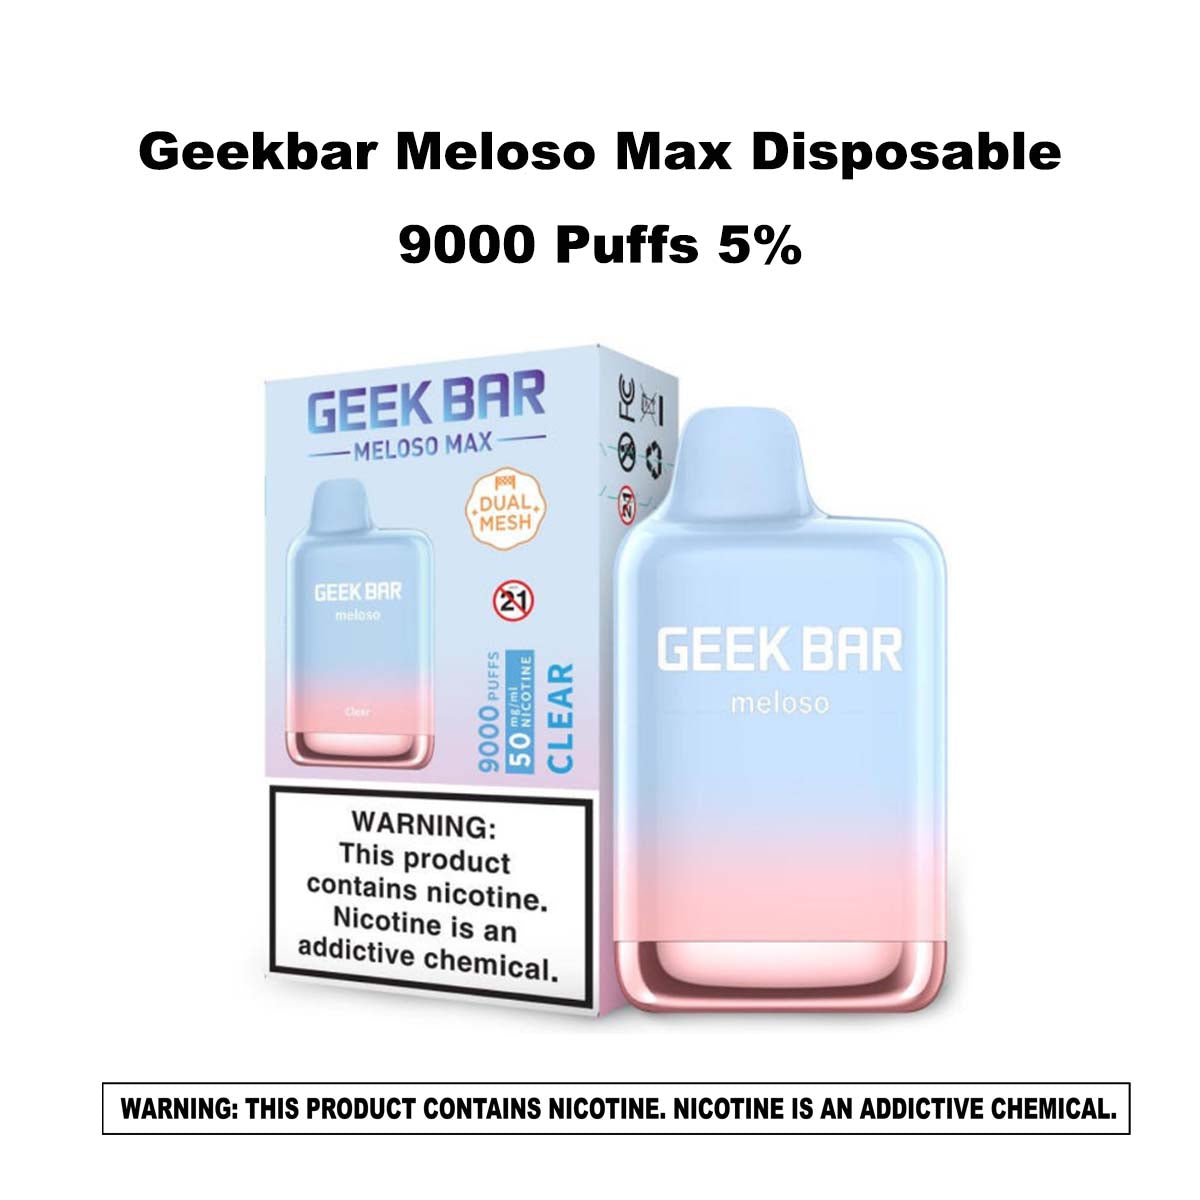 Geekbar Meloso Max Disposable 9000 Puffs 5%